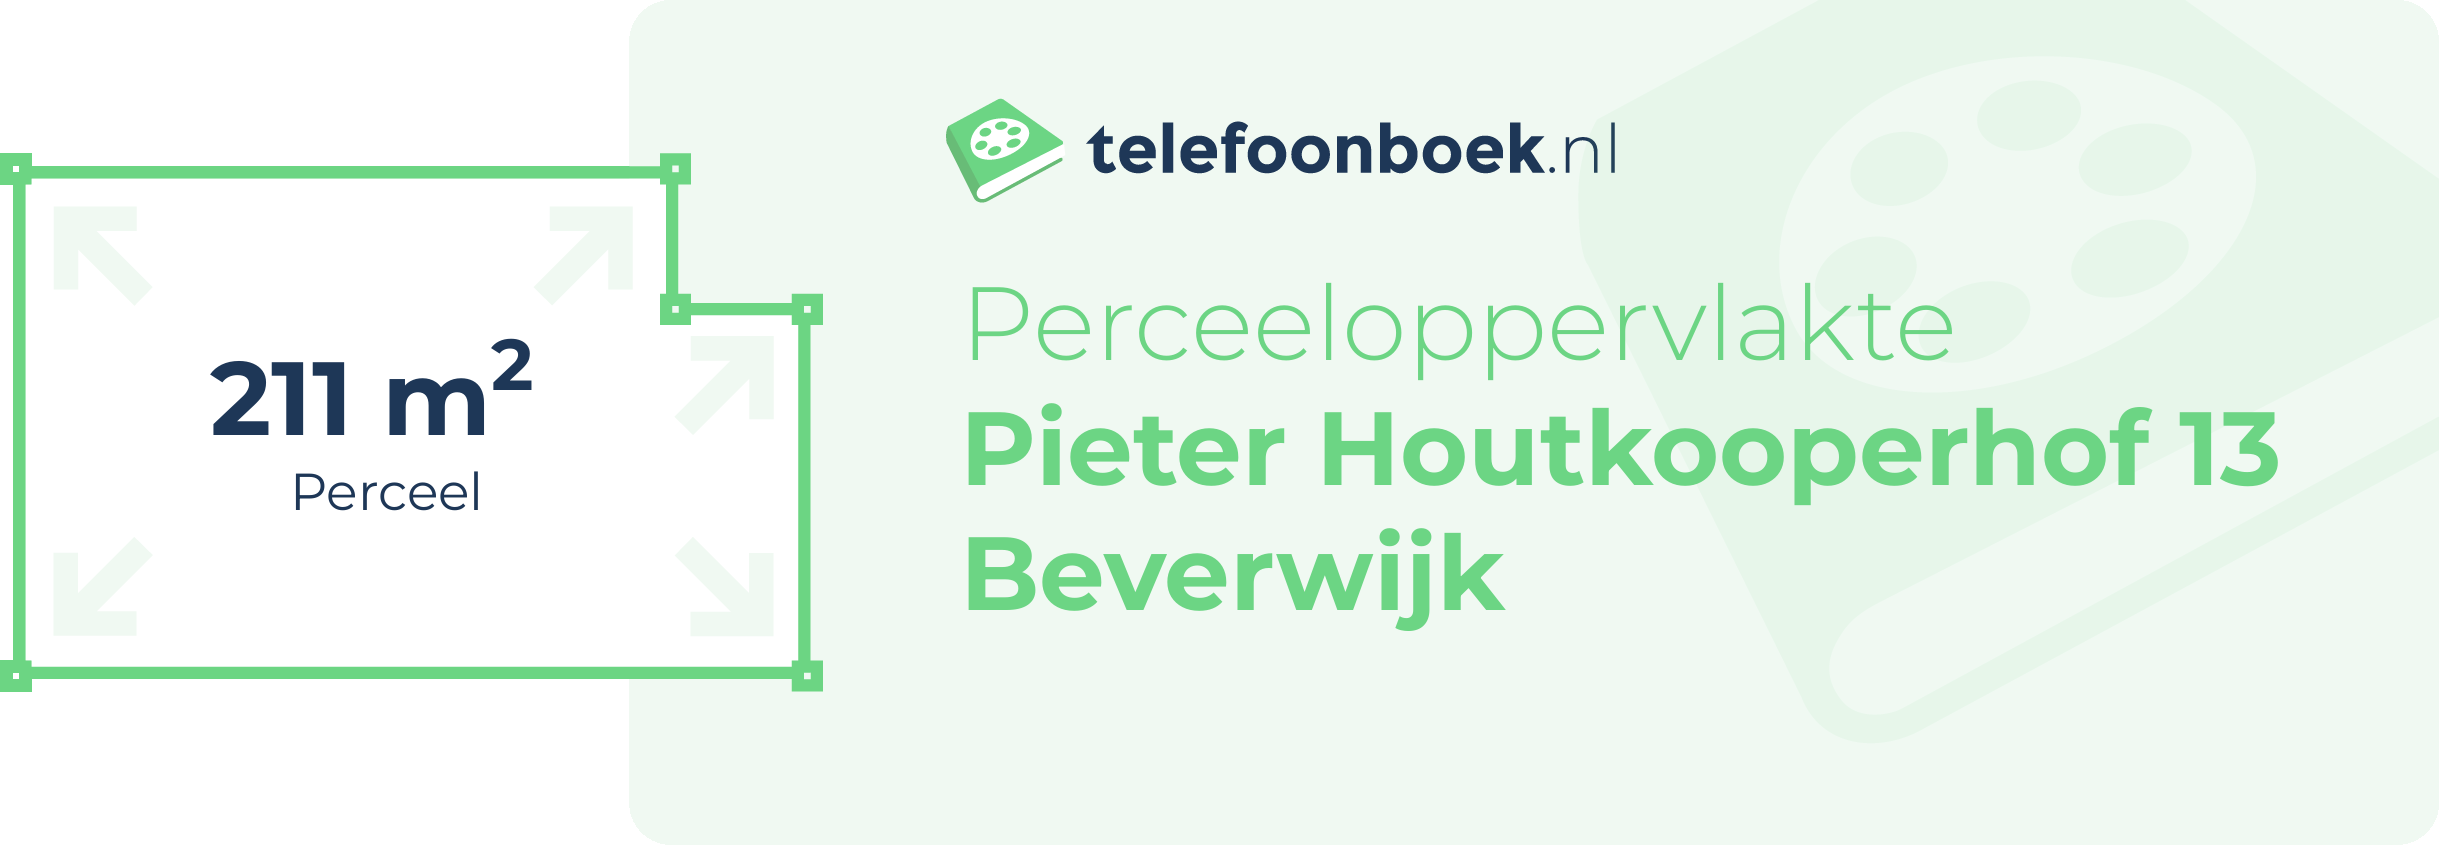 Perceeloppervlakte Pieter Houtkooperhof 13 Beverwijk